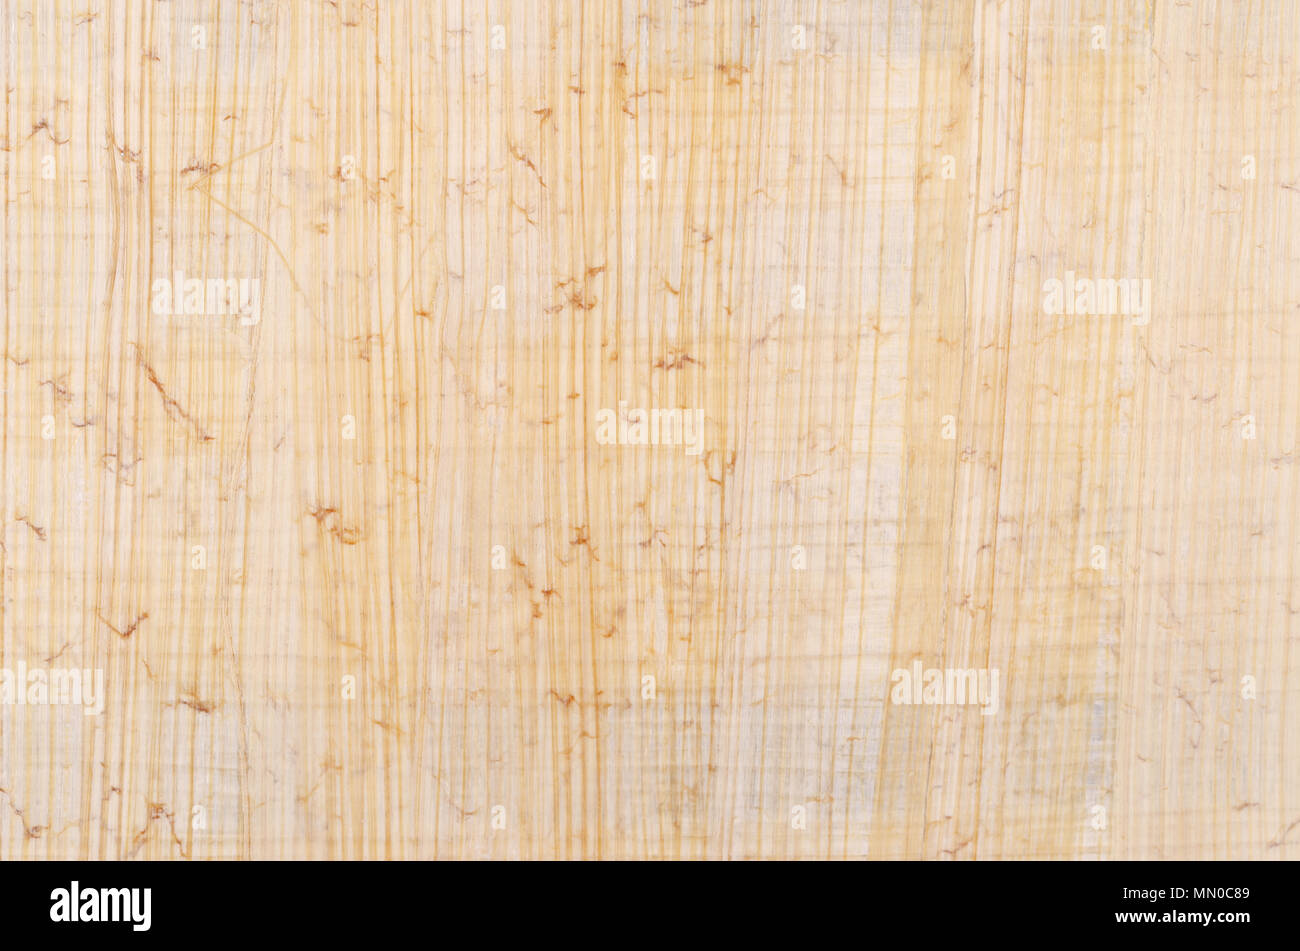 Surface de papyrus. Matériau semblable à du papier épais, utilisé dans les temps anciens, comme une plage d'écriture. Faites de la moelle de l'usine de papyrus, Cyperus papyrus. Banque D'Images